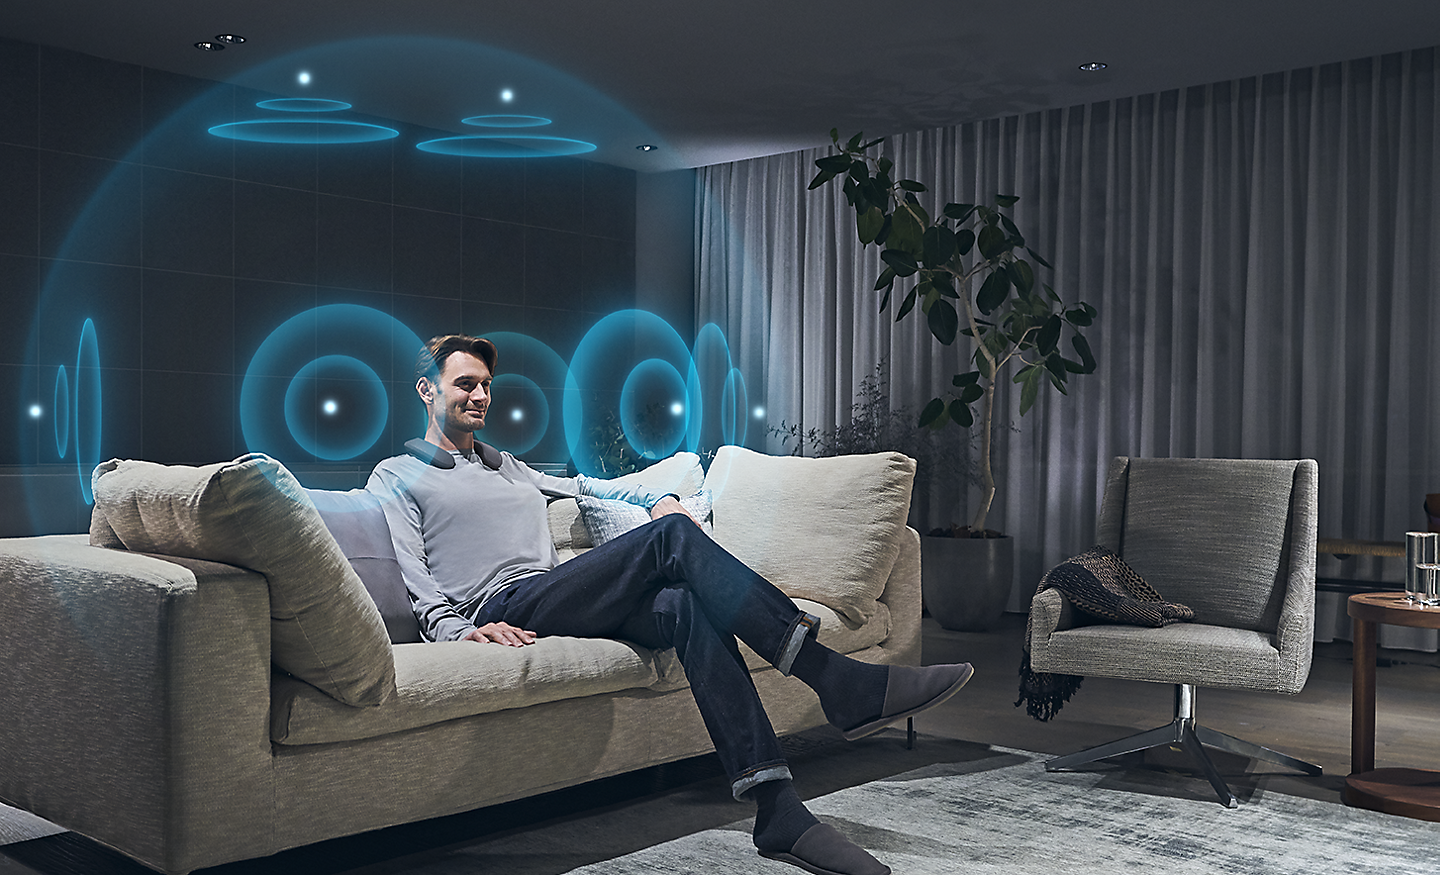 Imagen de un hombre en una sala de estar con ondas de sonido azules ilustradas que representan 360 Spatial Sound